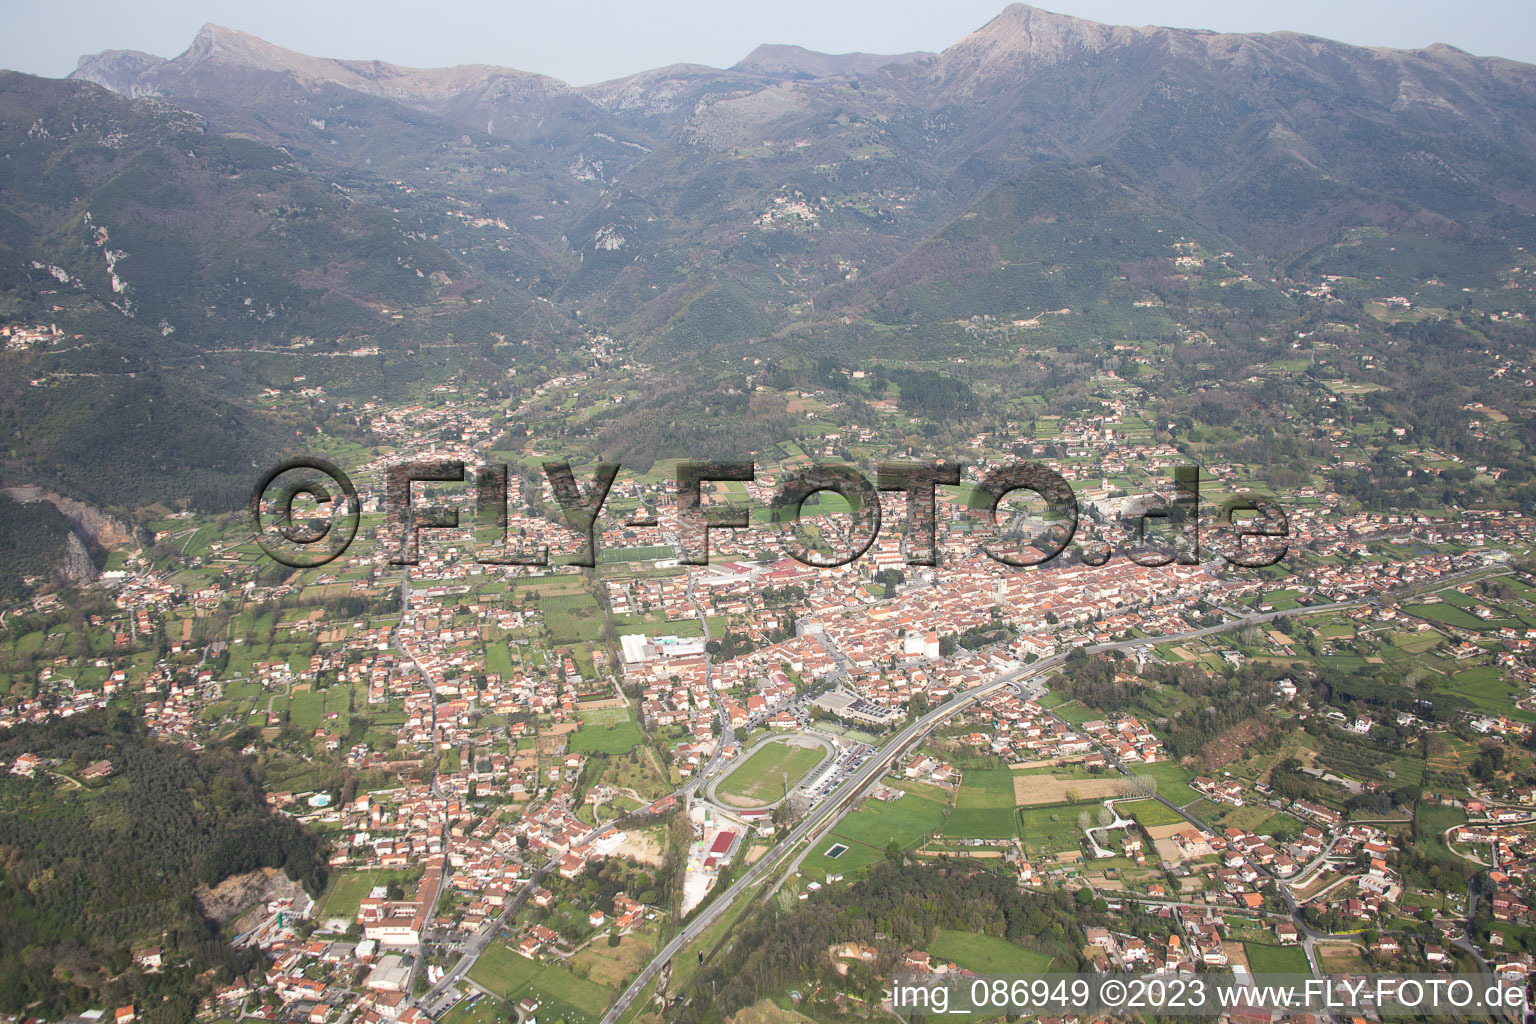 Luftbild von Camaiore(I-Toskana) im Bundesland Toscana, Italien